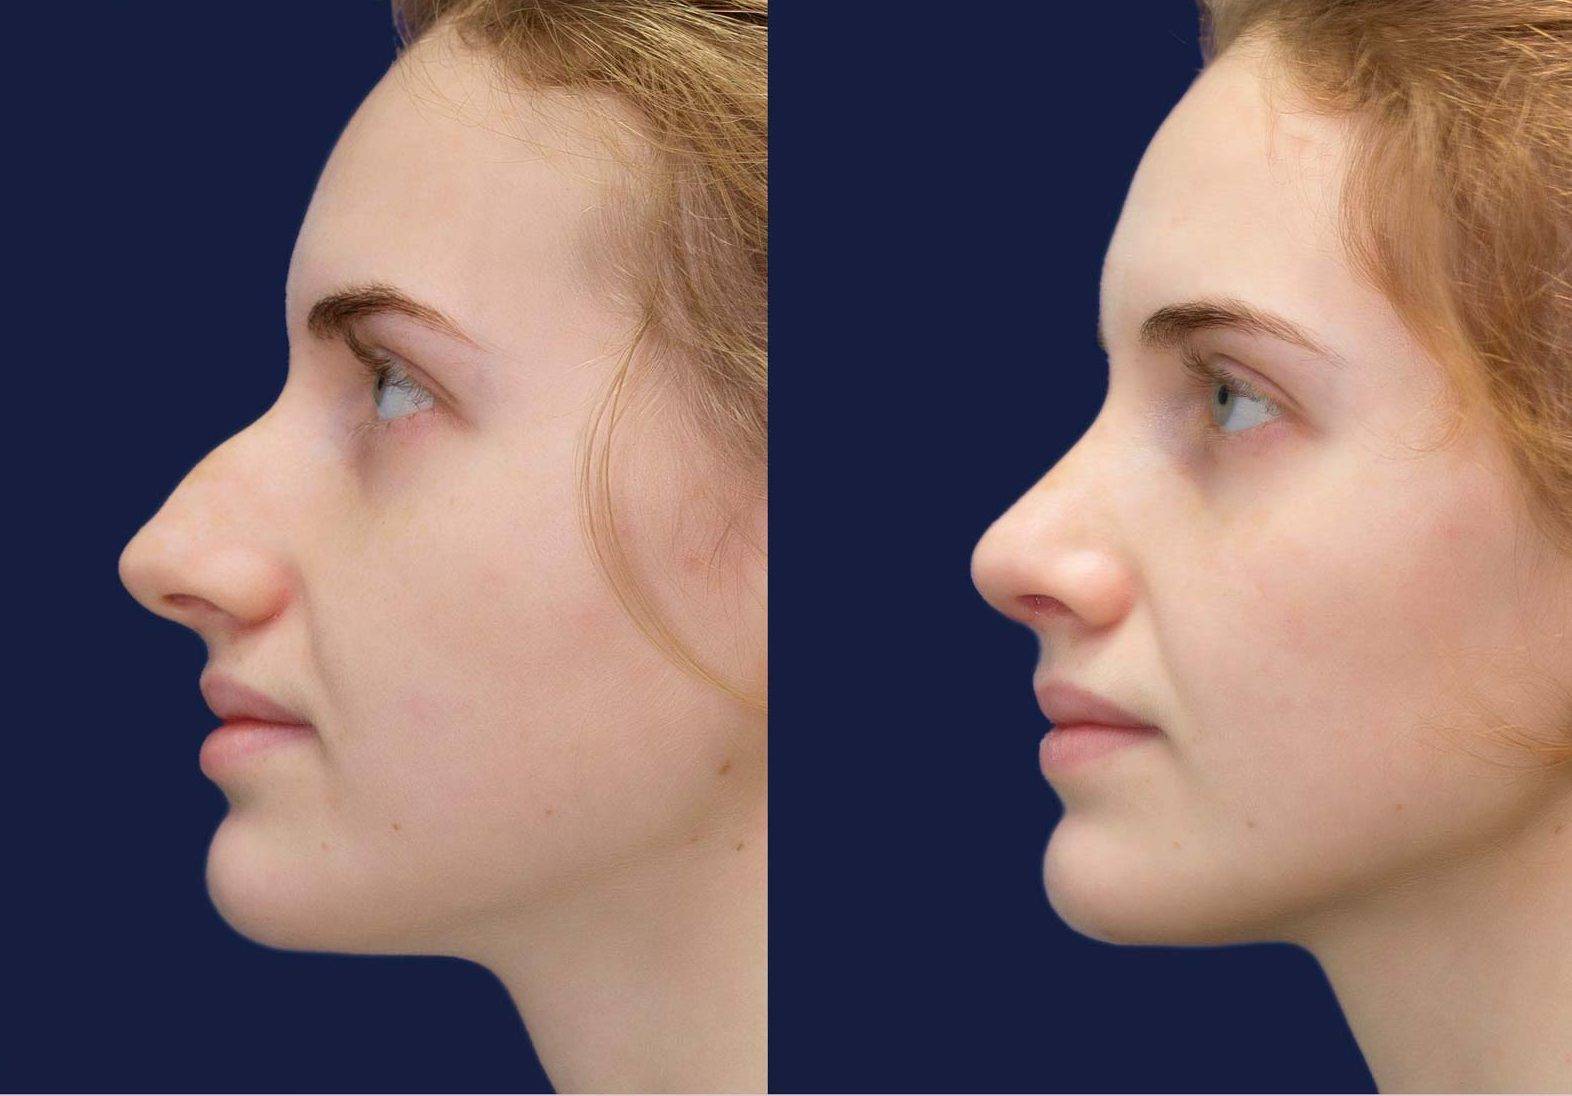 Курносый нос у девушки. фото, как это выглядит, как исправить, ринопластика, до и после операции